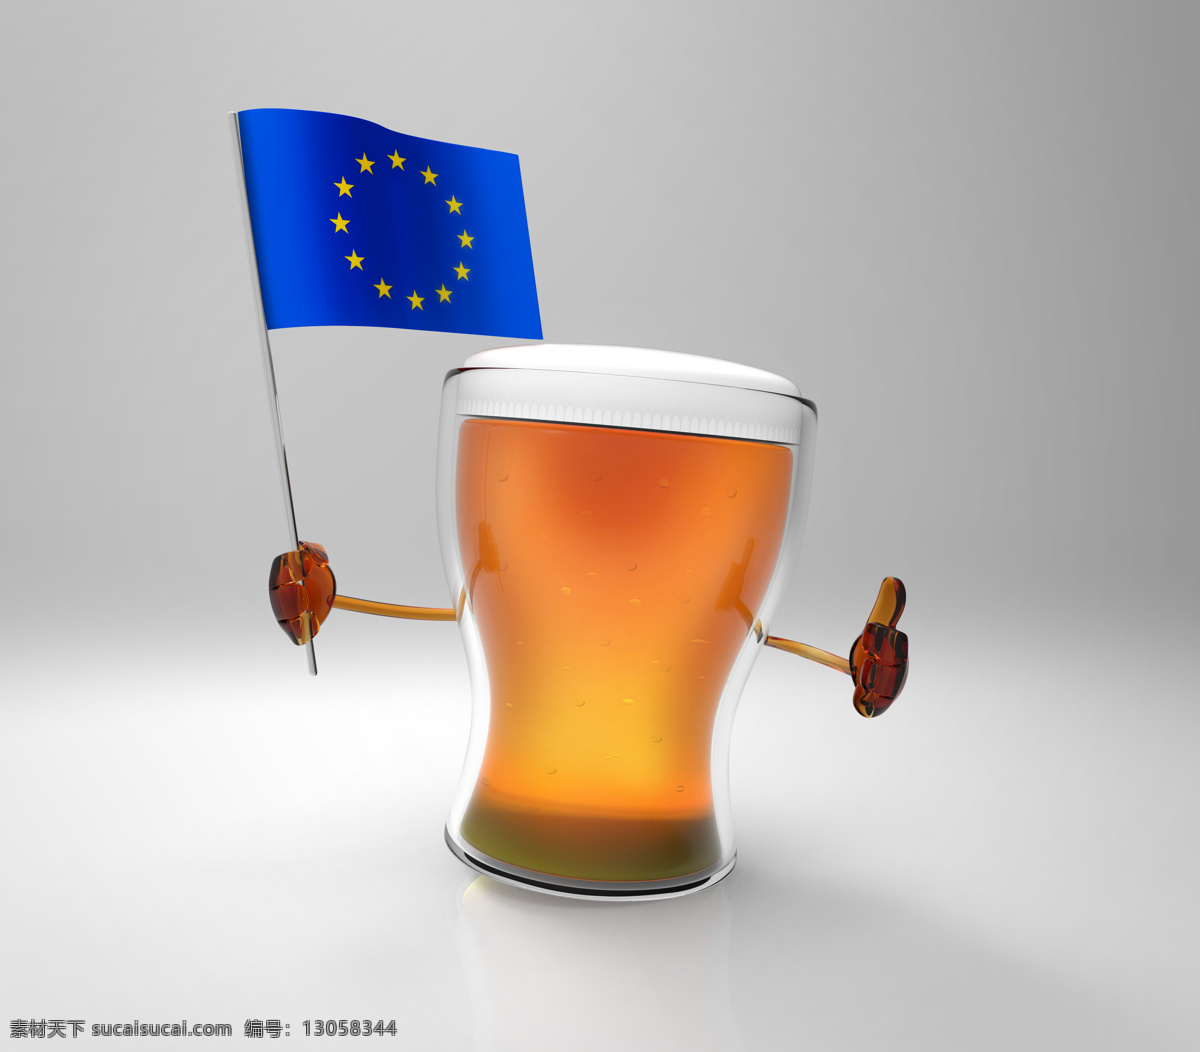 欧洲联盟 国旗 啤酒 欧洲联盟国旗 旗子 餐厅美食 美味 酒水饮料 餐饮美食 灰色